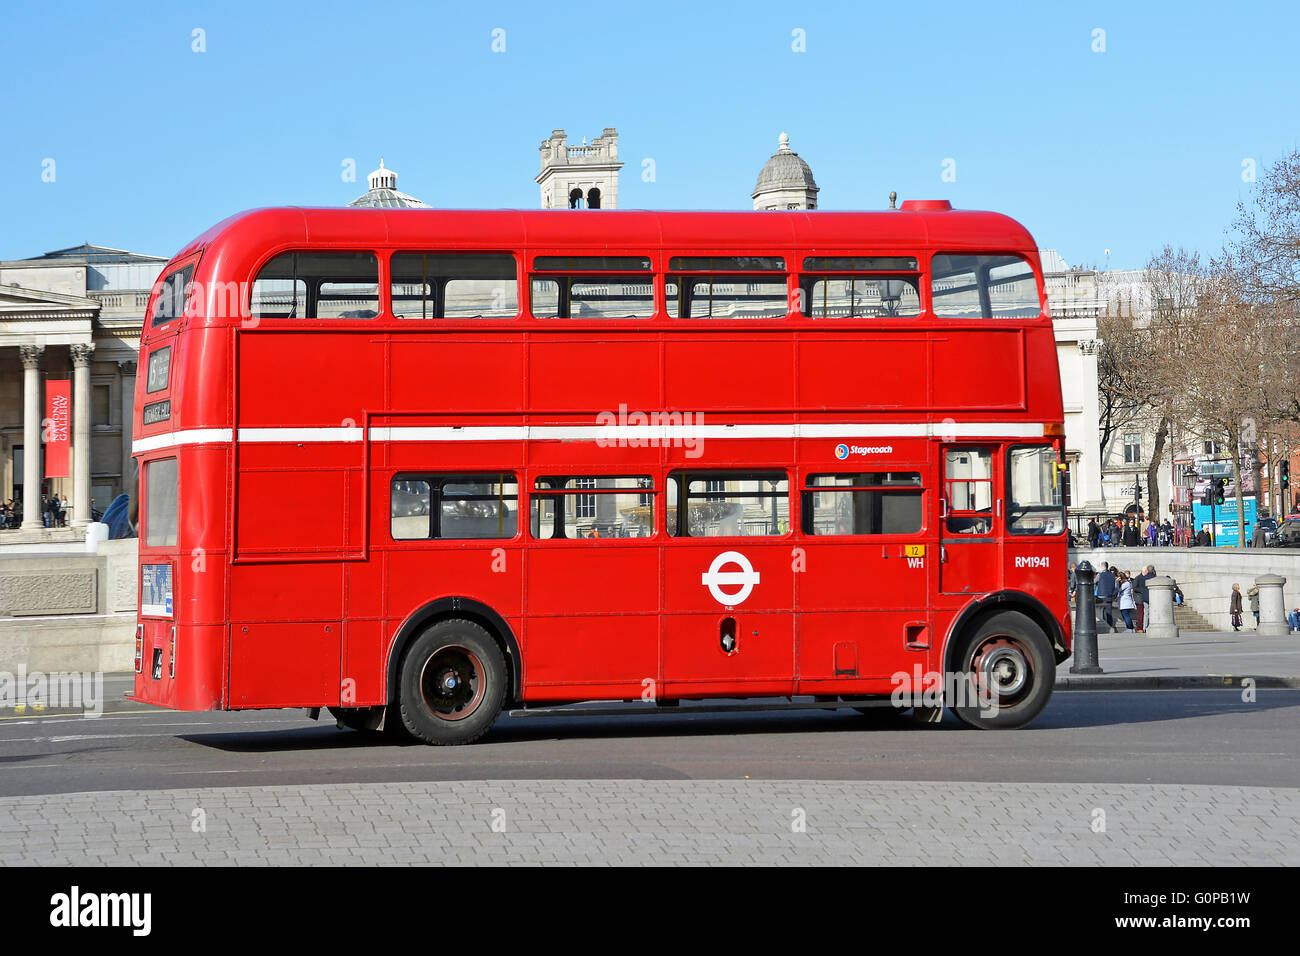 Reinigen von klassischen roten Londoner Routemaster Bus Design im alten Stil betrieben mit der Postkutsche auf regulären Route 15 in Trafalgar Square London England UK Stockfoto